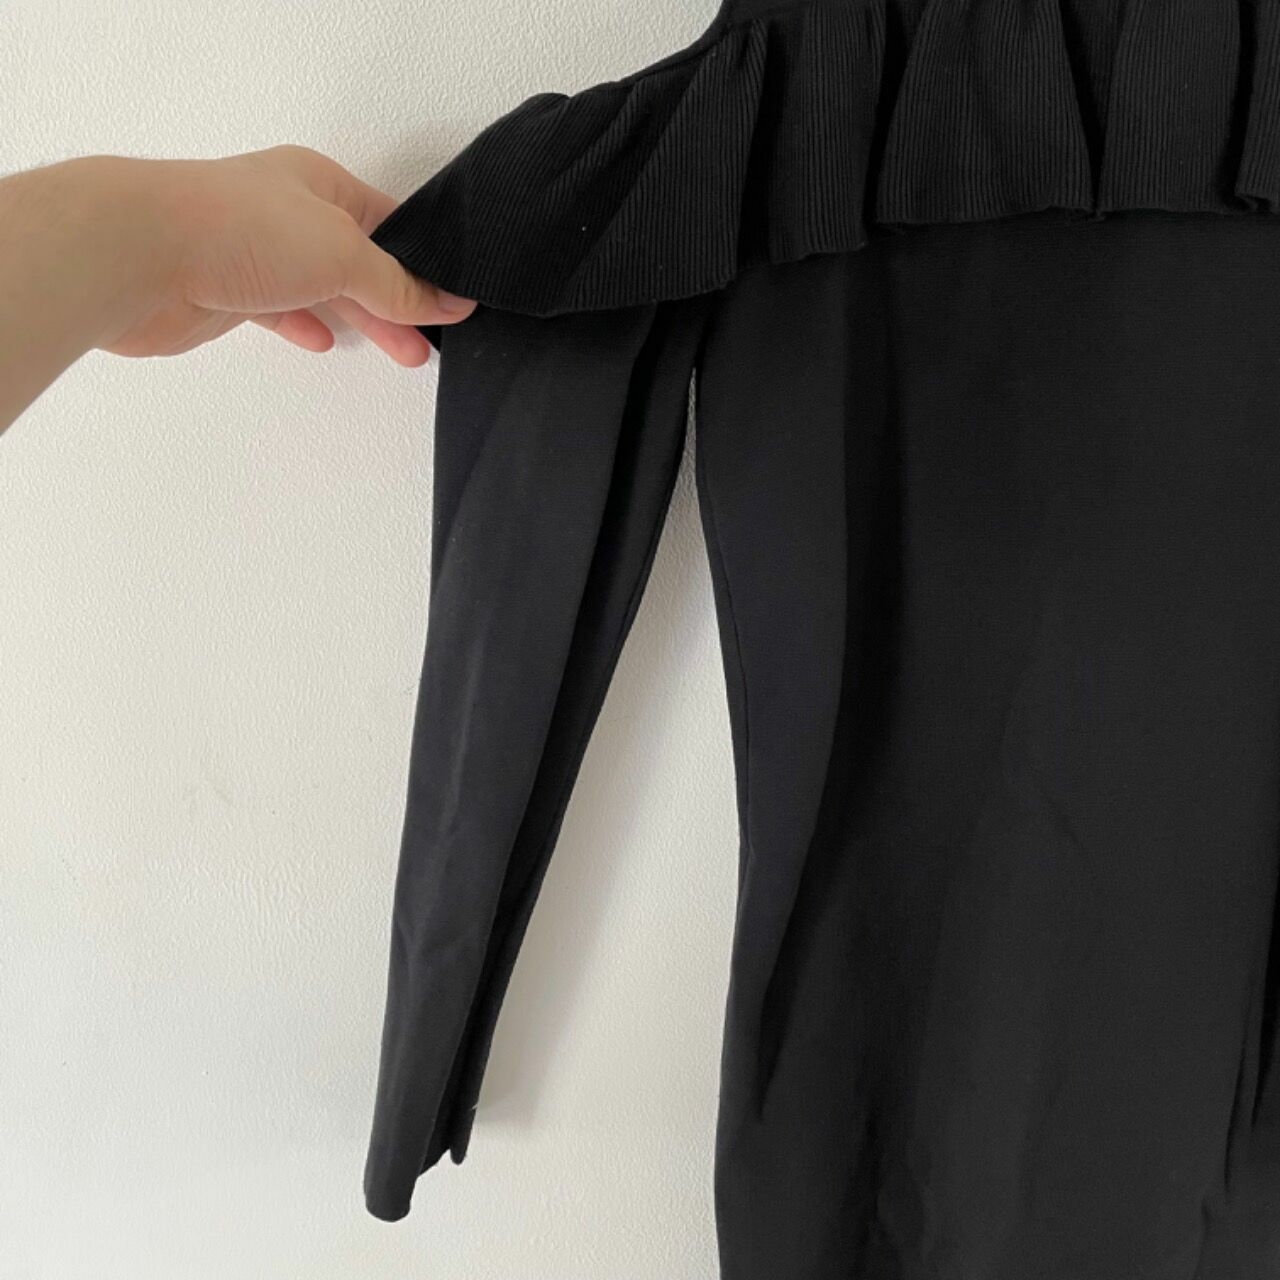 Zara Knit Black Midi Dress